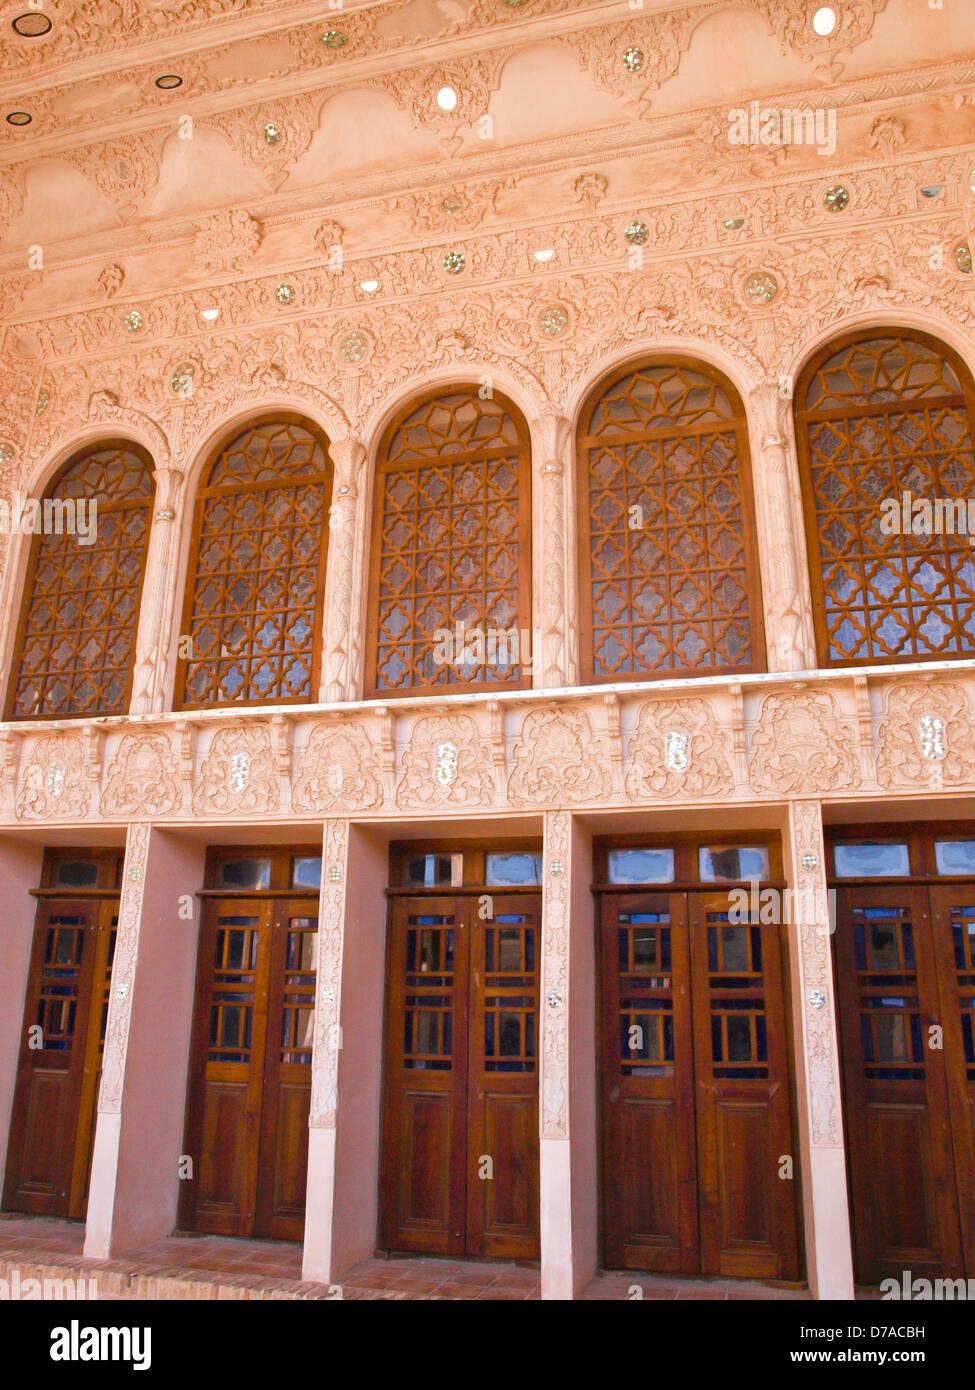 Niches portes intérieur en stuc et vieille maison à Kashan, Iran Banque D'Images